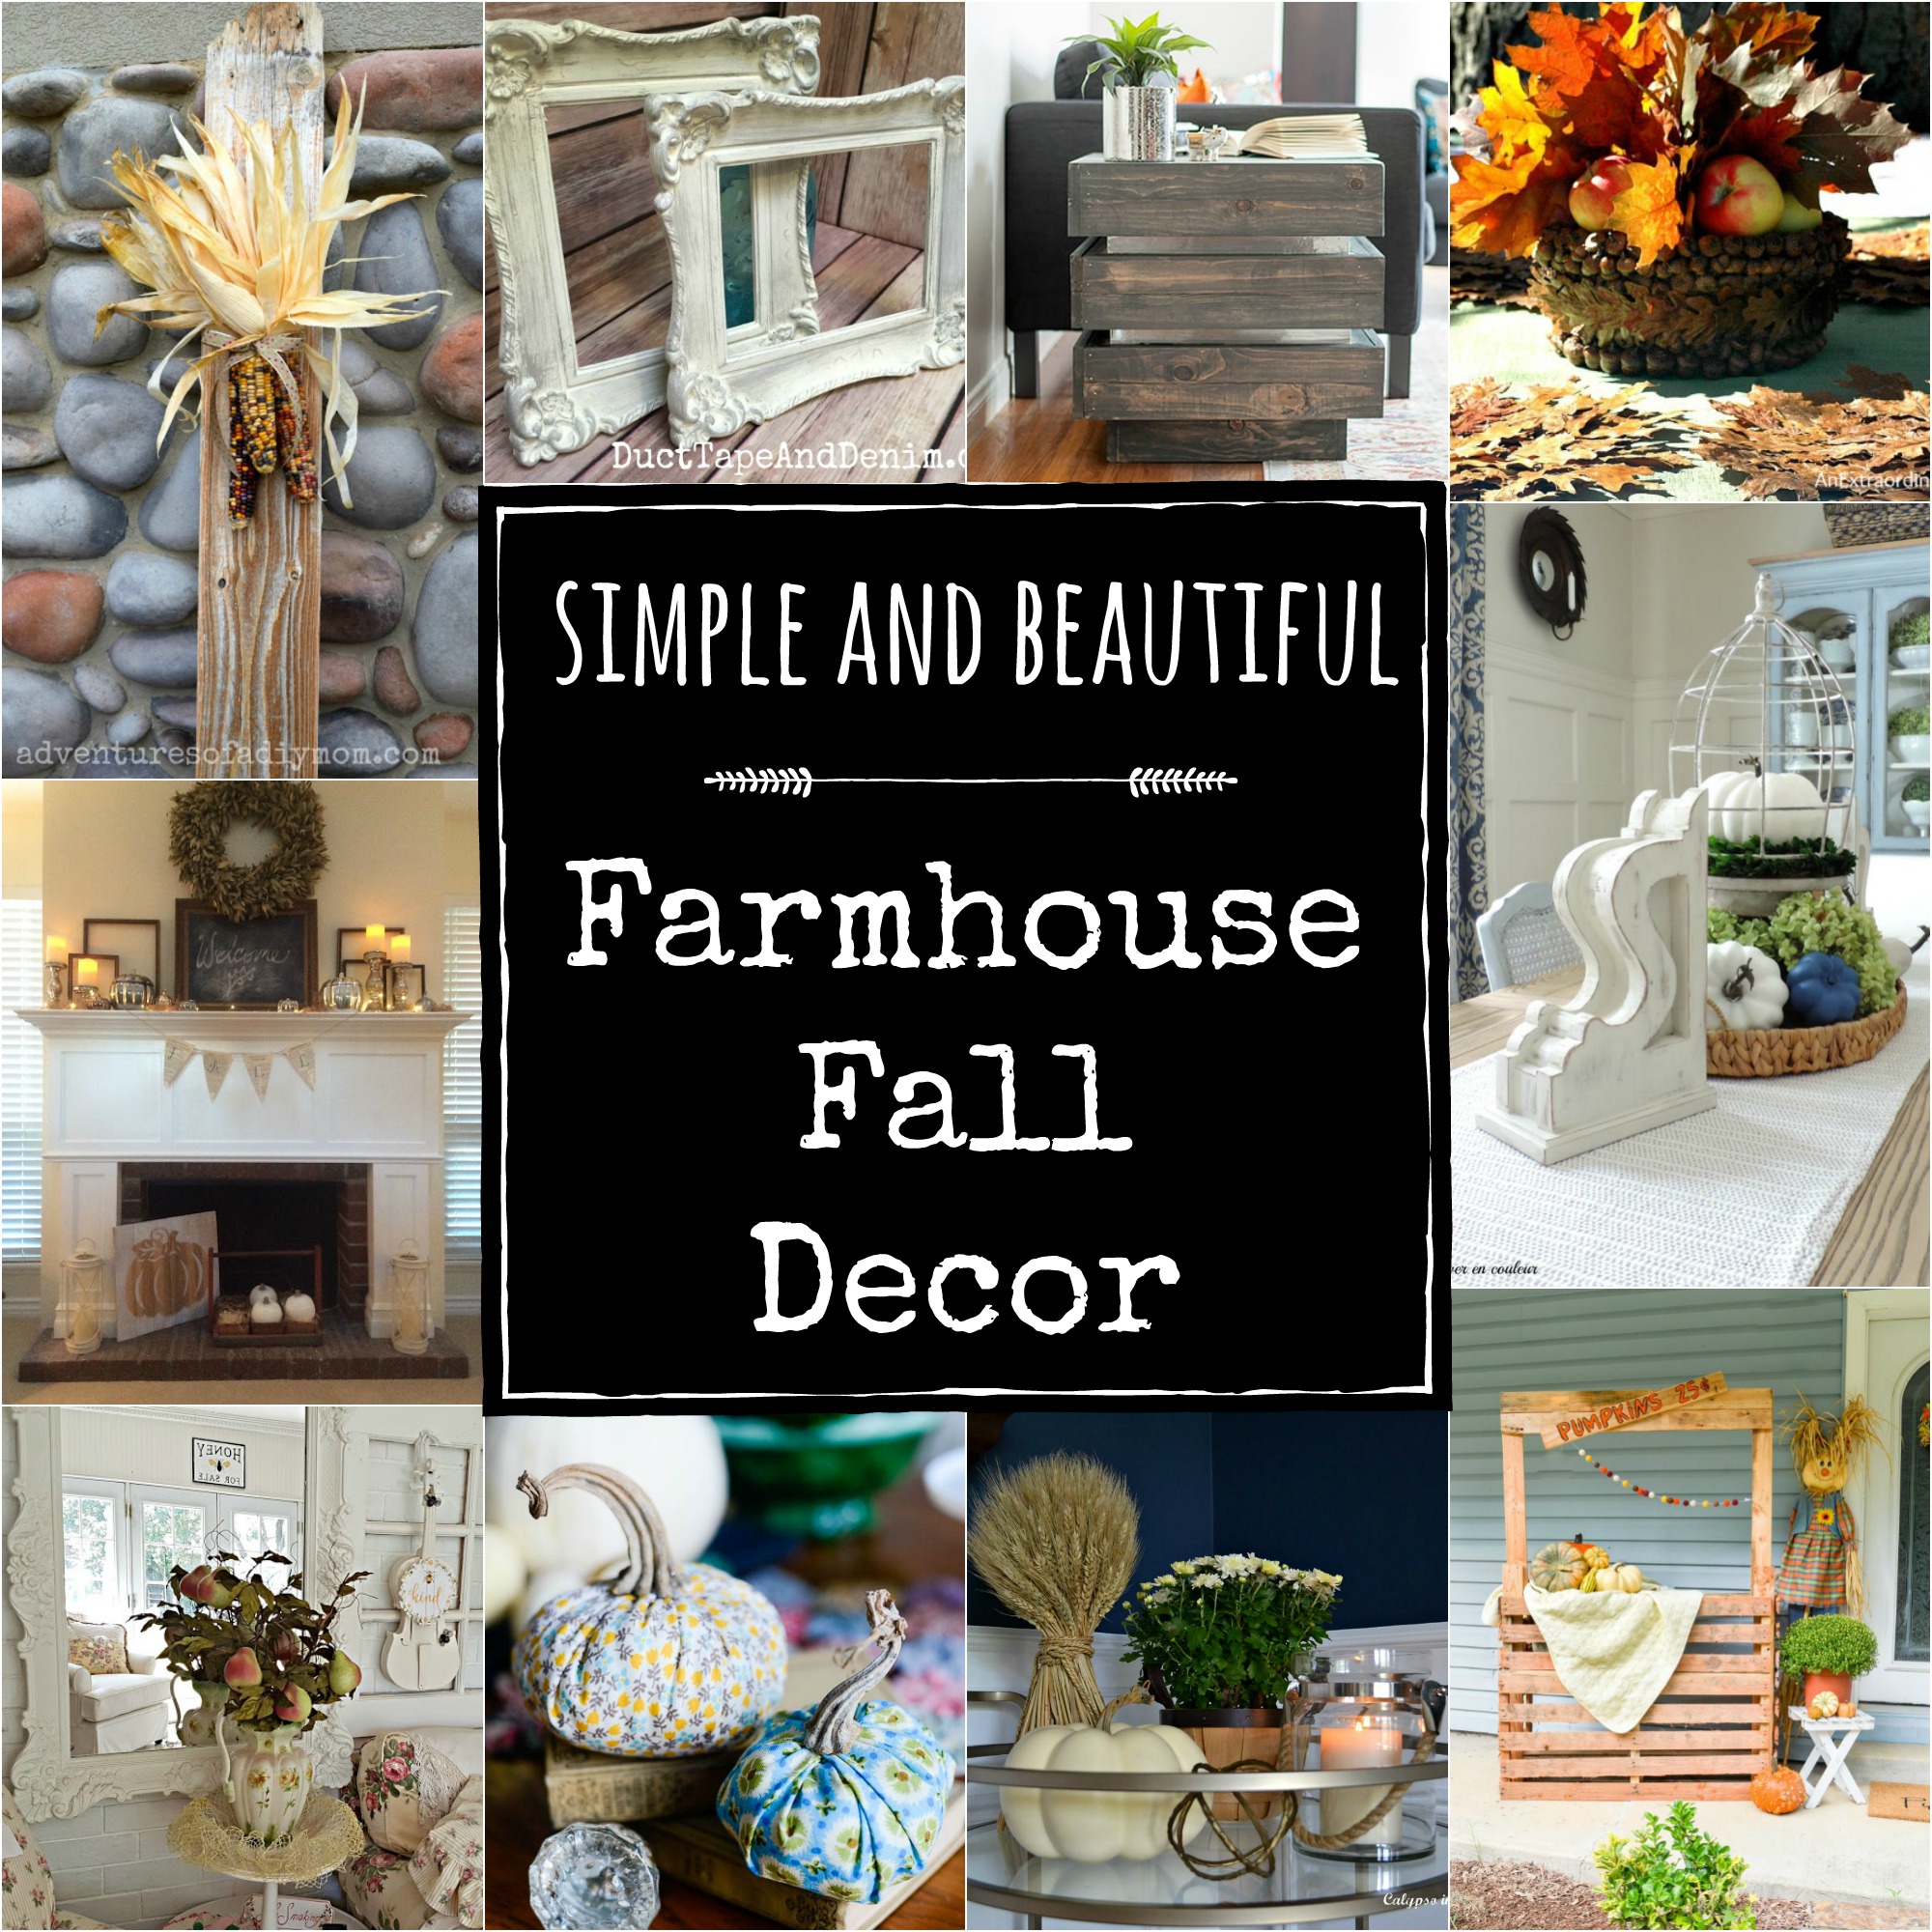 Simple and Beautiful Farmhouse Fall Decor